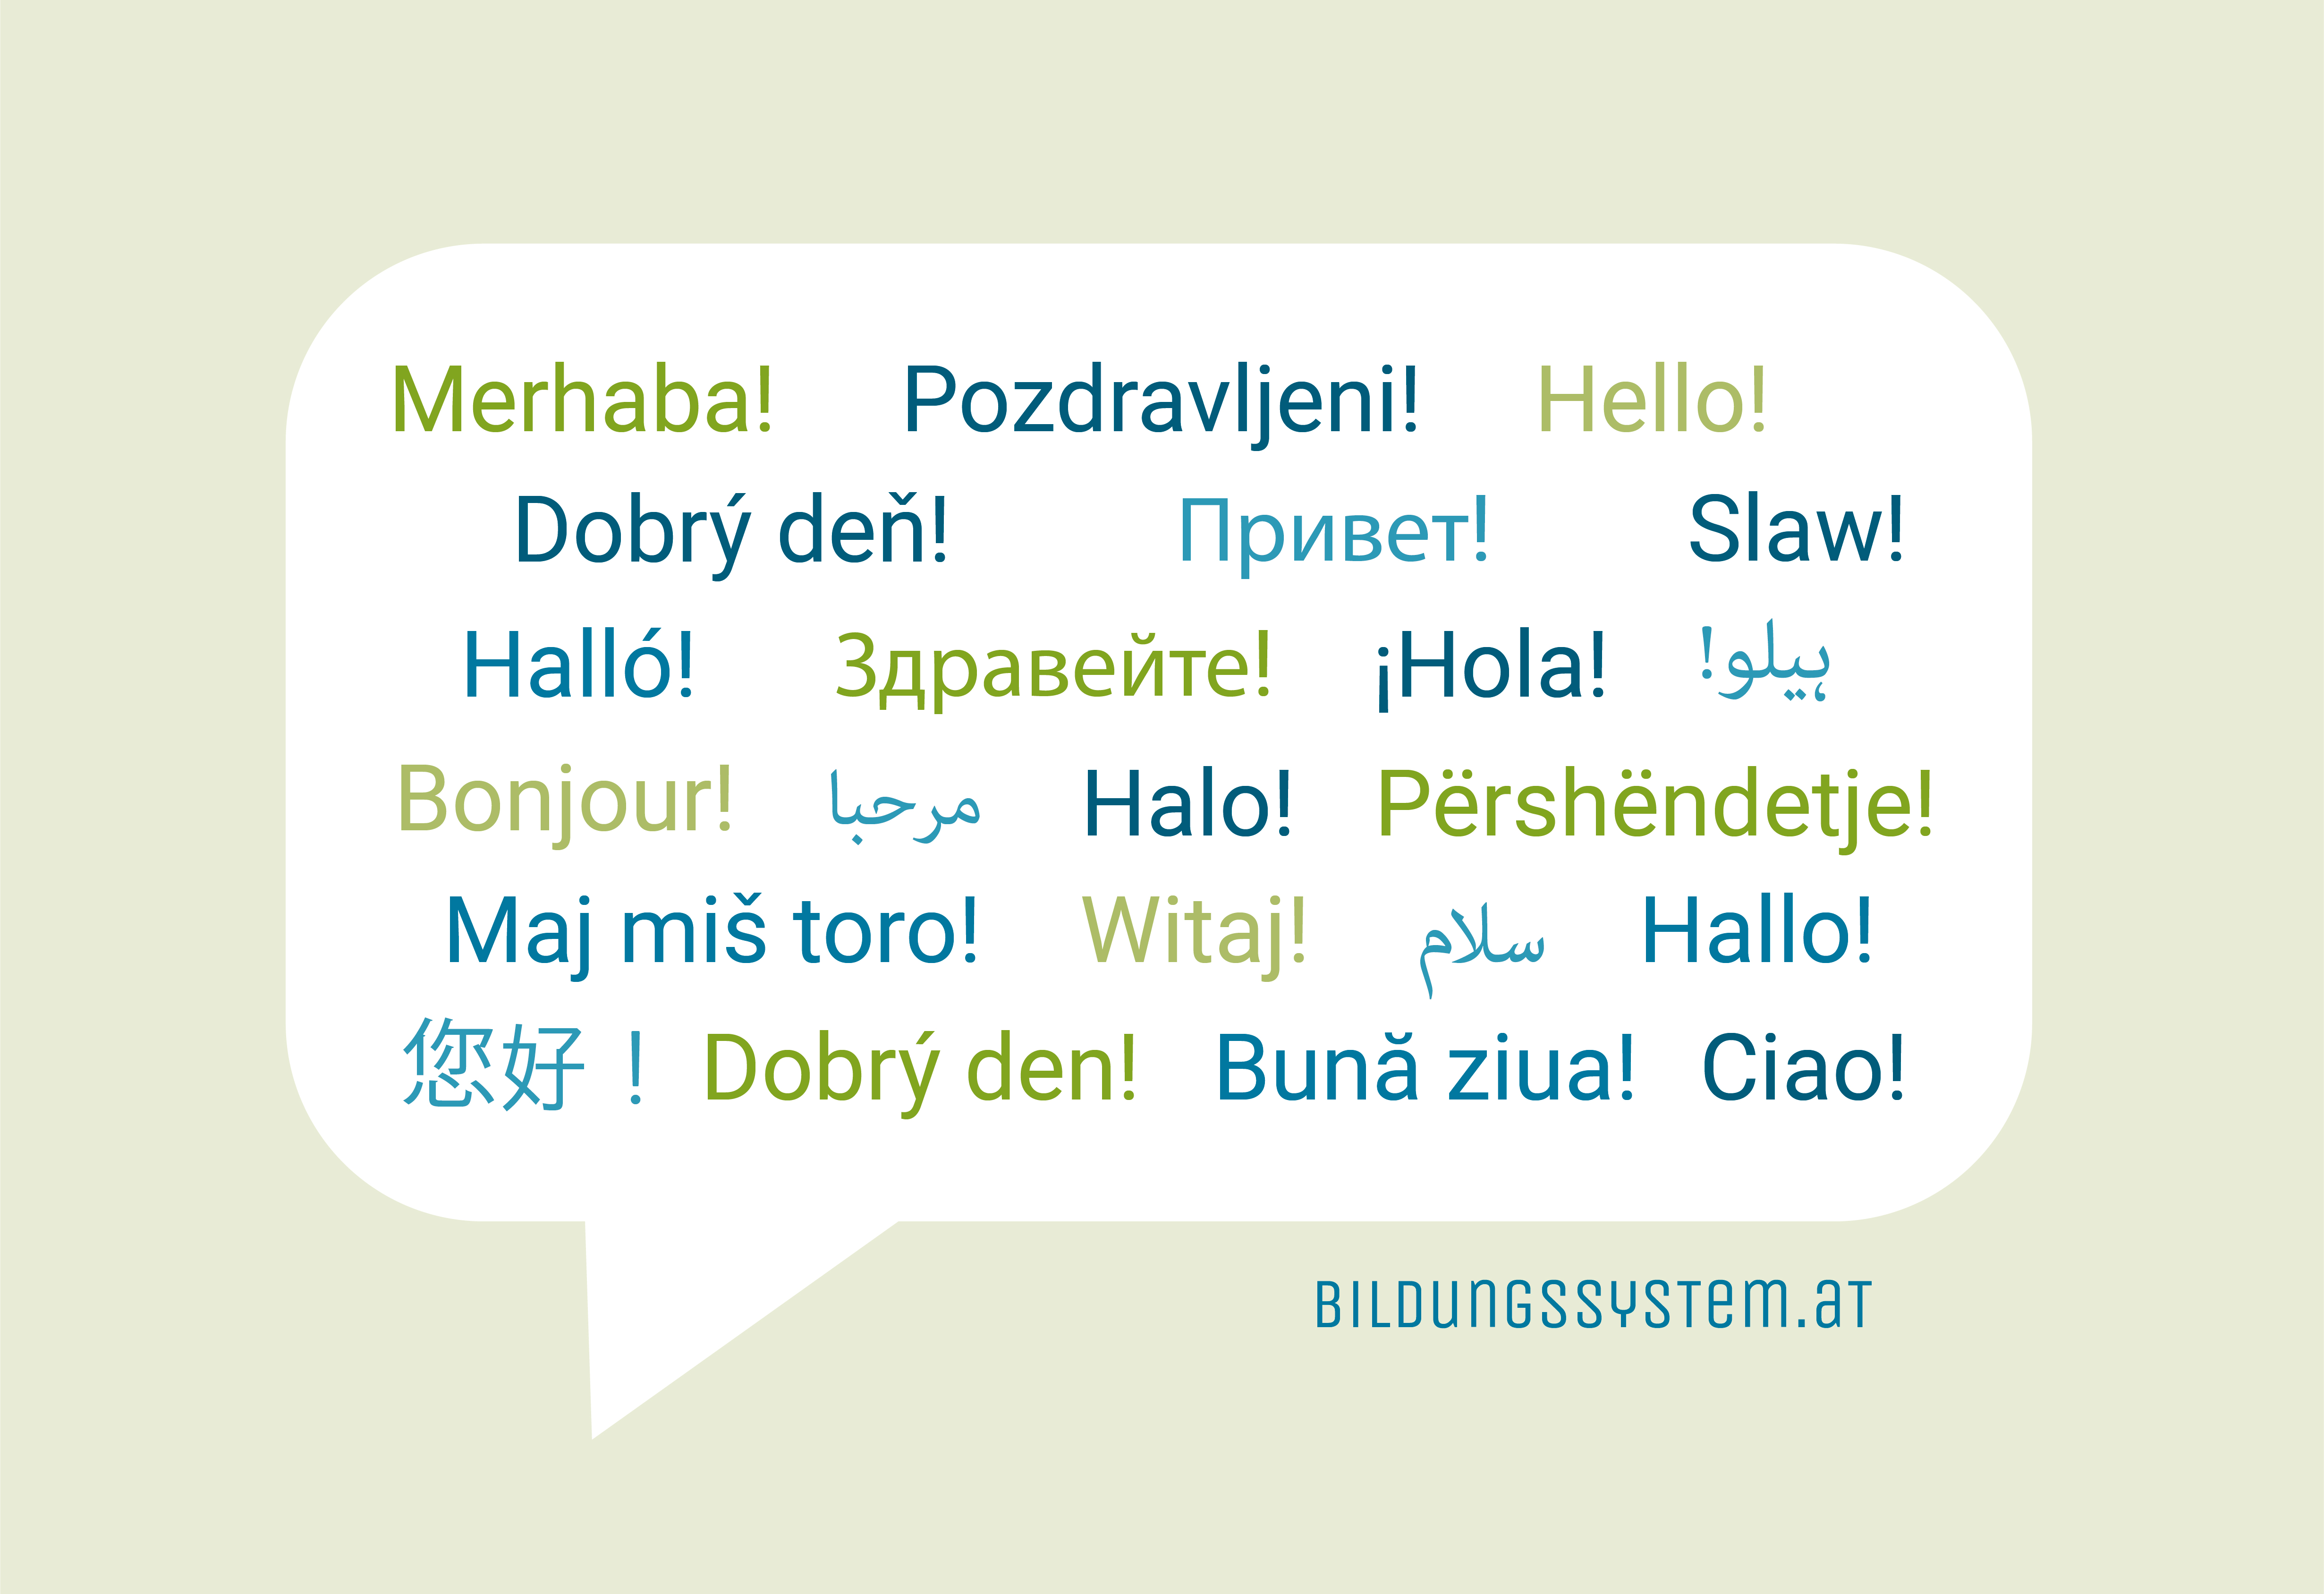 Austrian Education System Languages